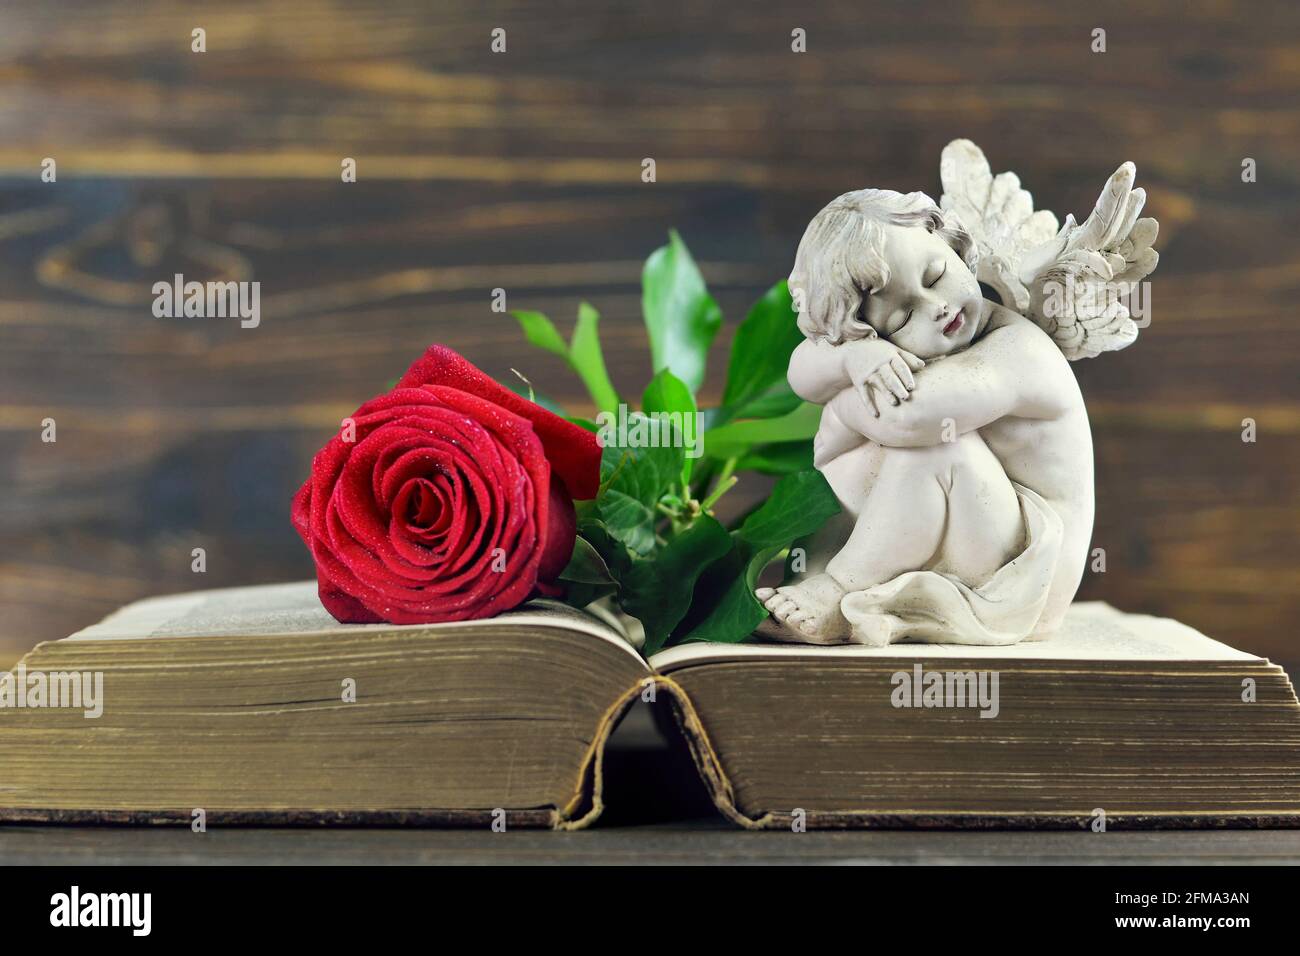 Sympathiekarte mit schlafenden Engel und roter Rose auf offen Buchen  Stockfotografie - Alamy